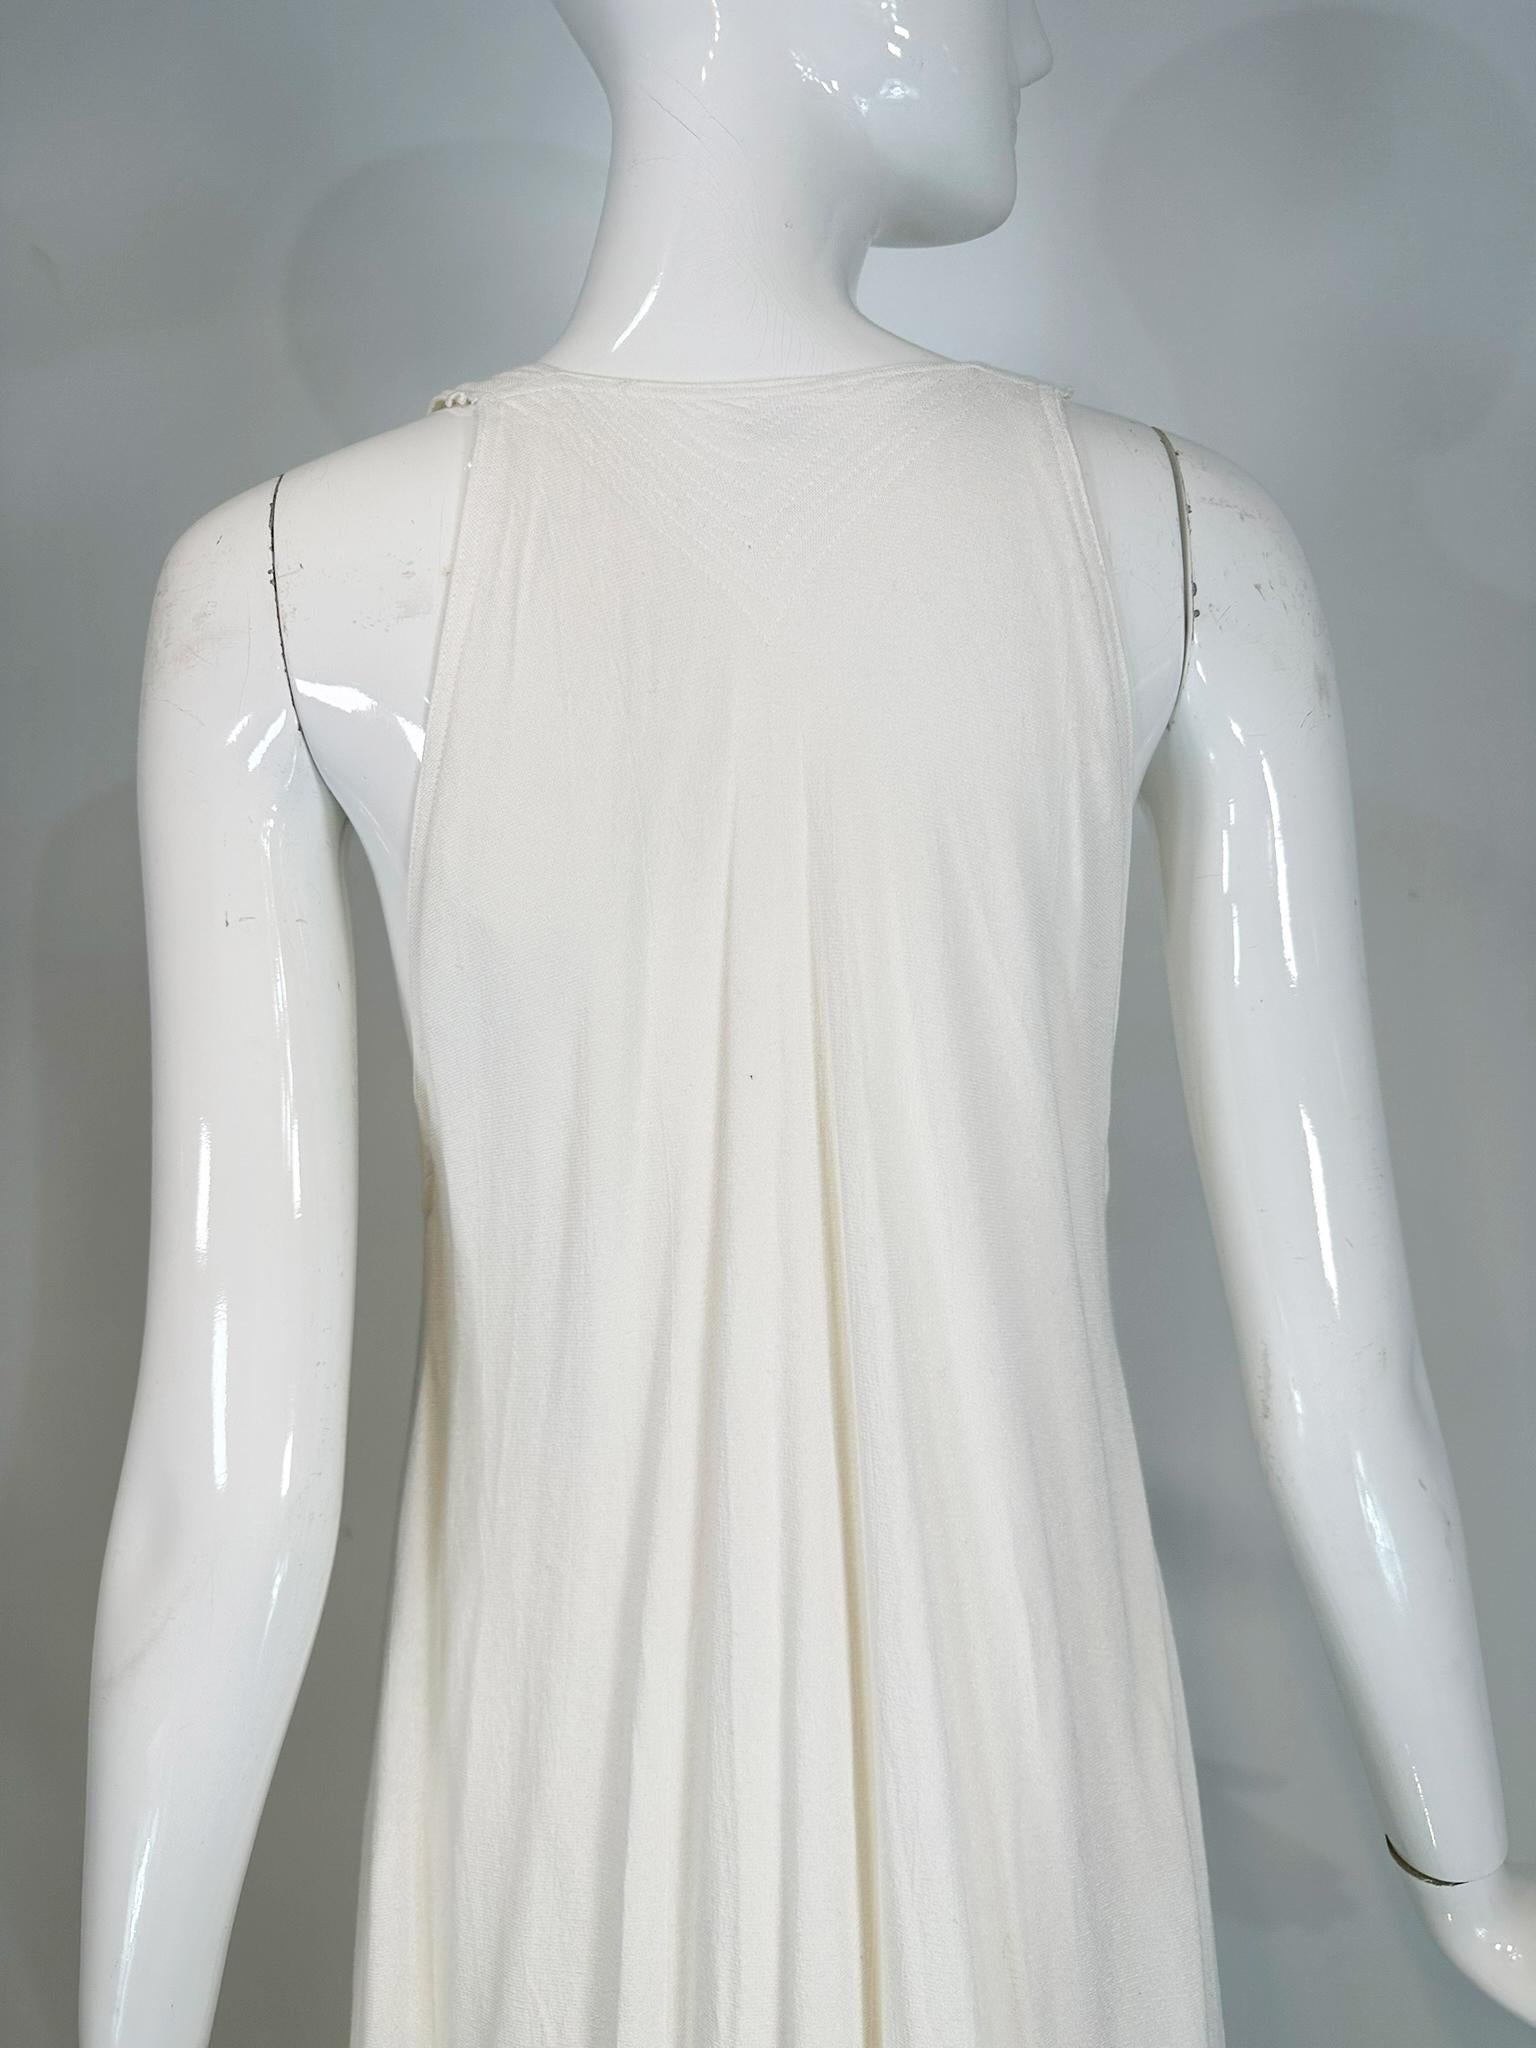 Laise Adzer Off White Racer Shoulder Maxi Layered Fringe Hem Sleeveless Dress For Sale 10